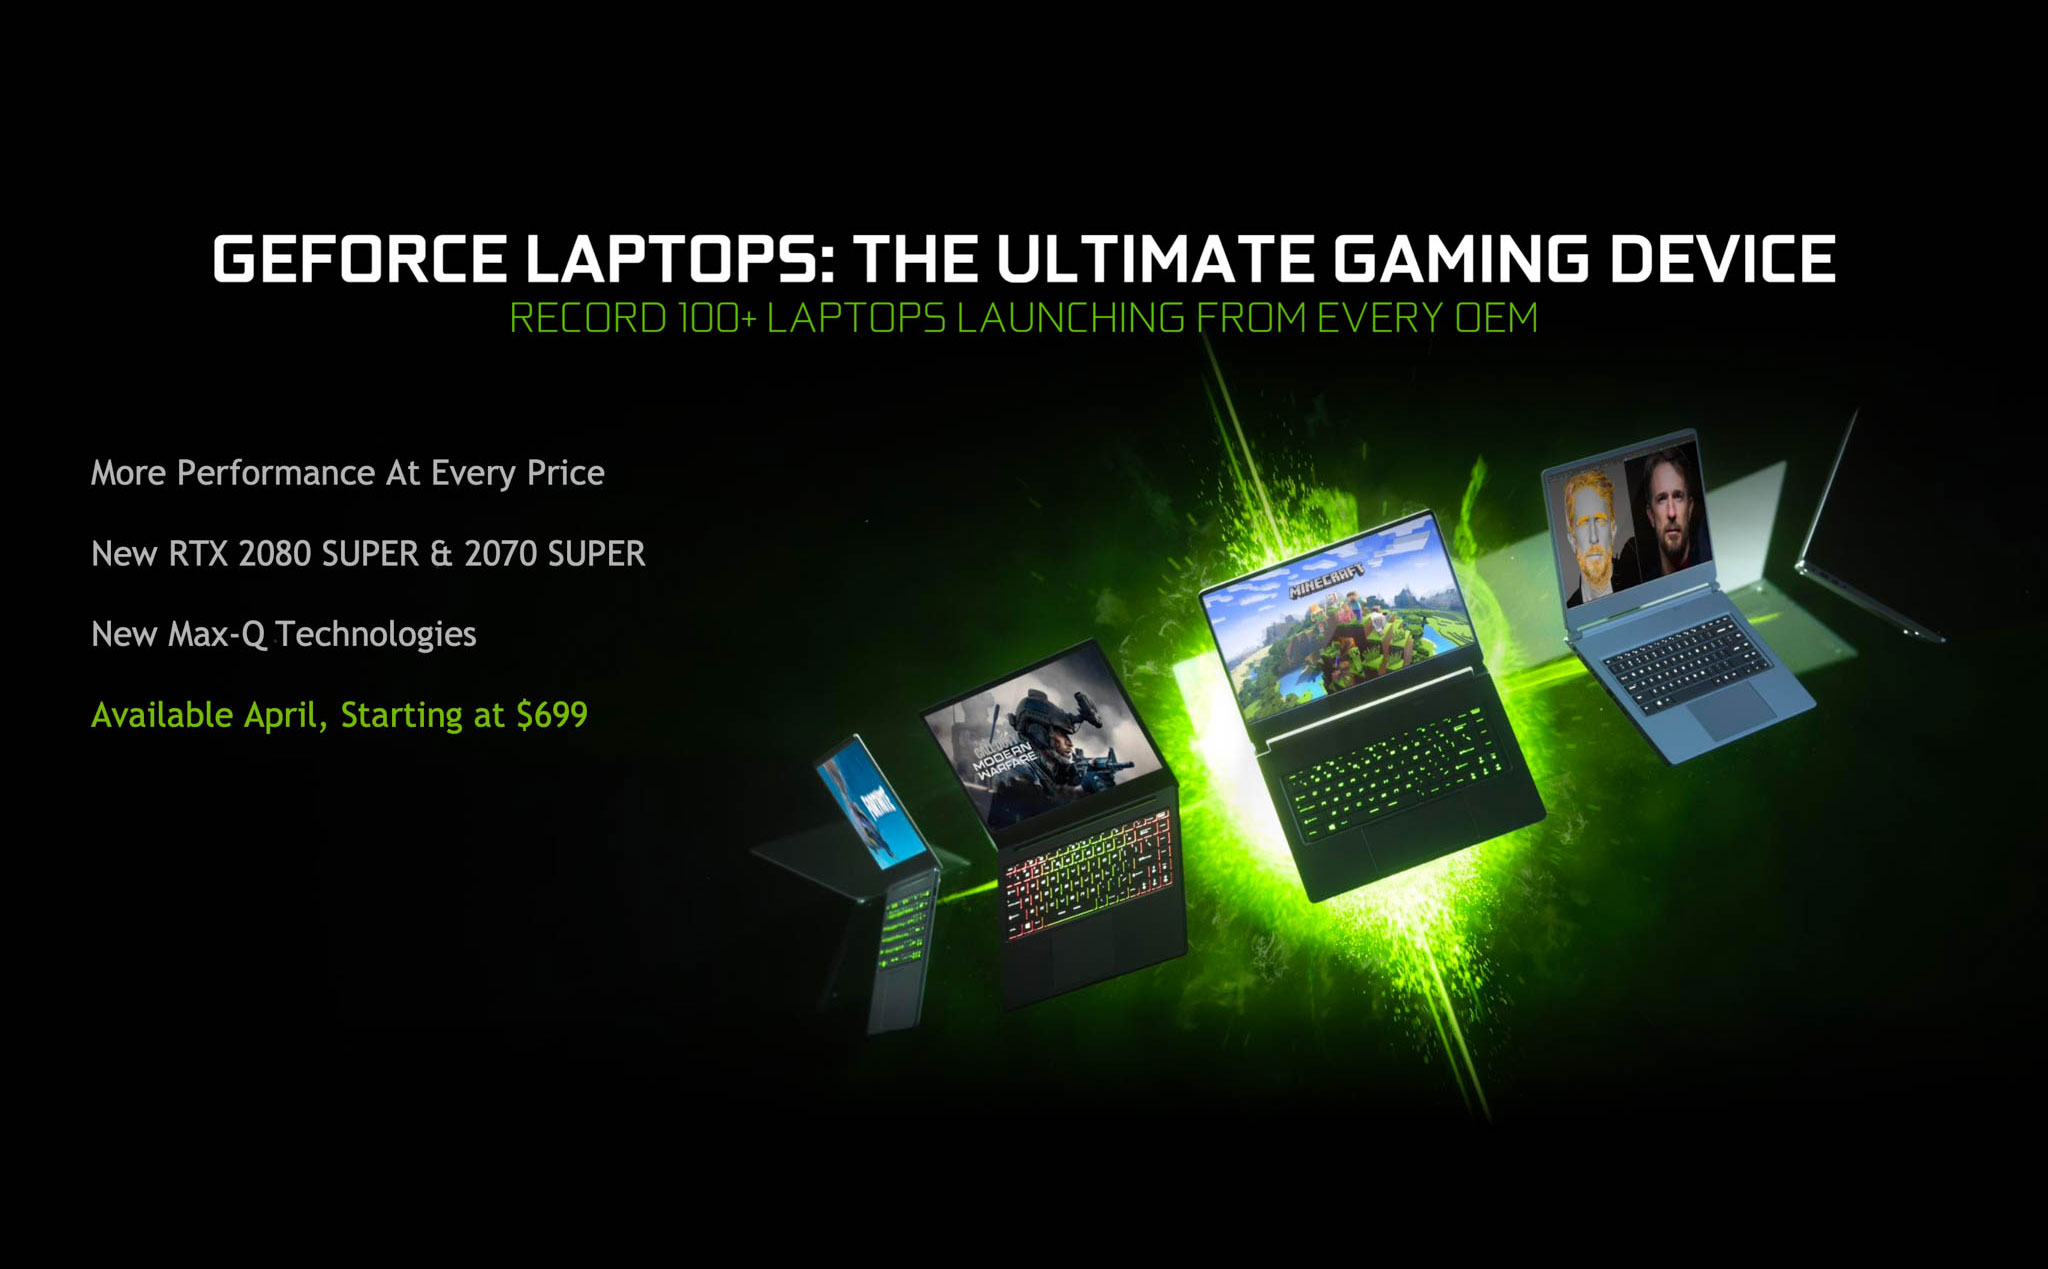 NVIDIA giới thiệu hơn 100 laptop gaming mỏng, nhẹ chạy RTX Super, giá từ 999 đô